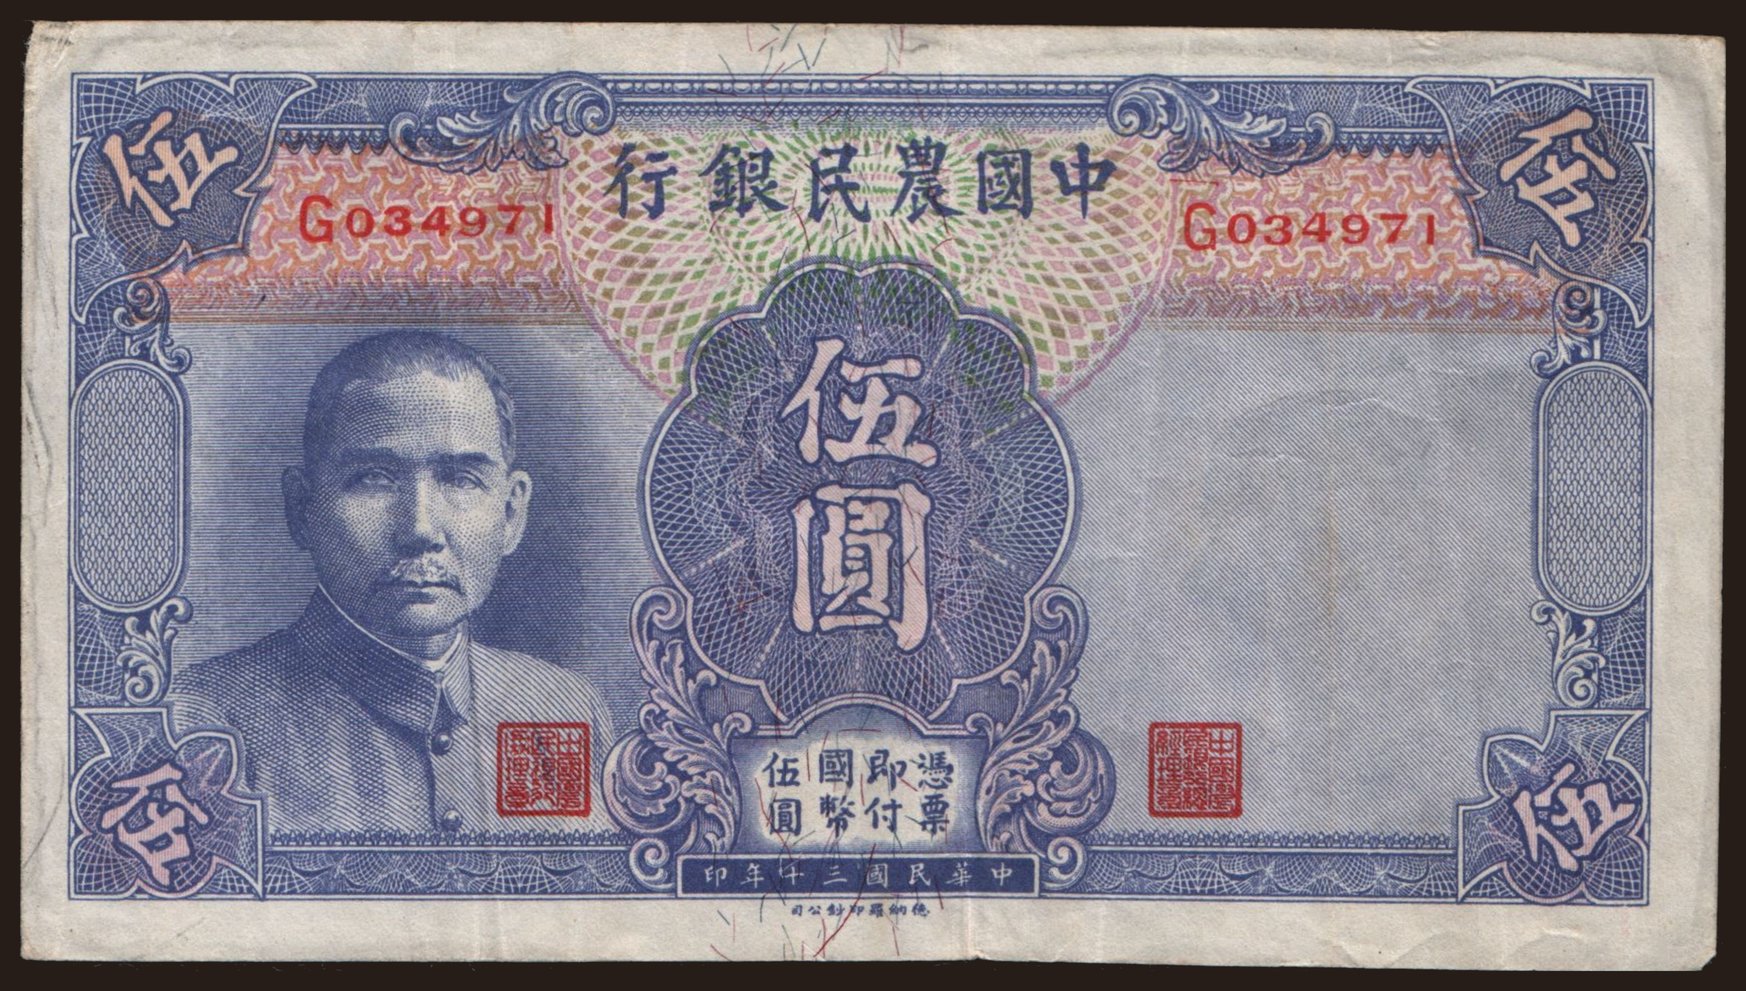 Farmers Bank of China, 5 yuan, 1941